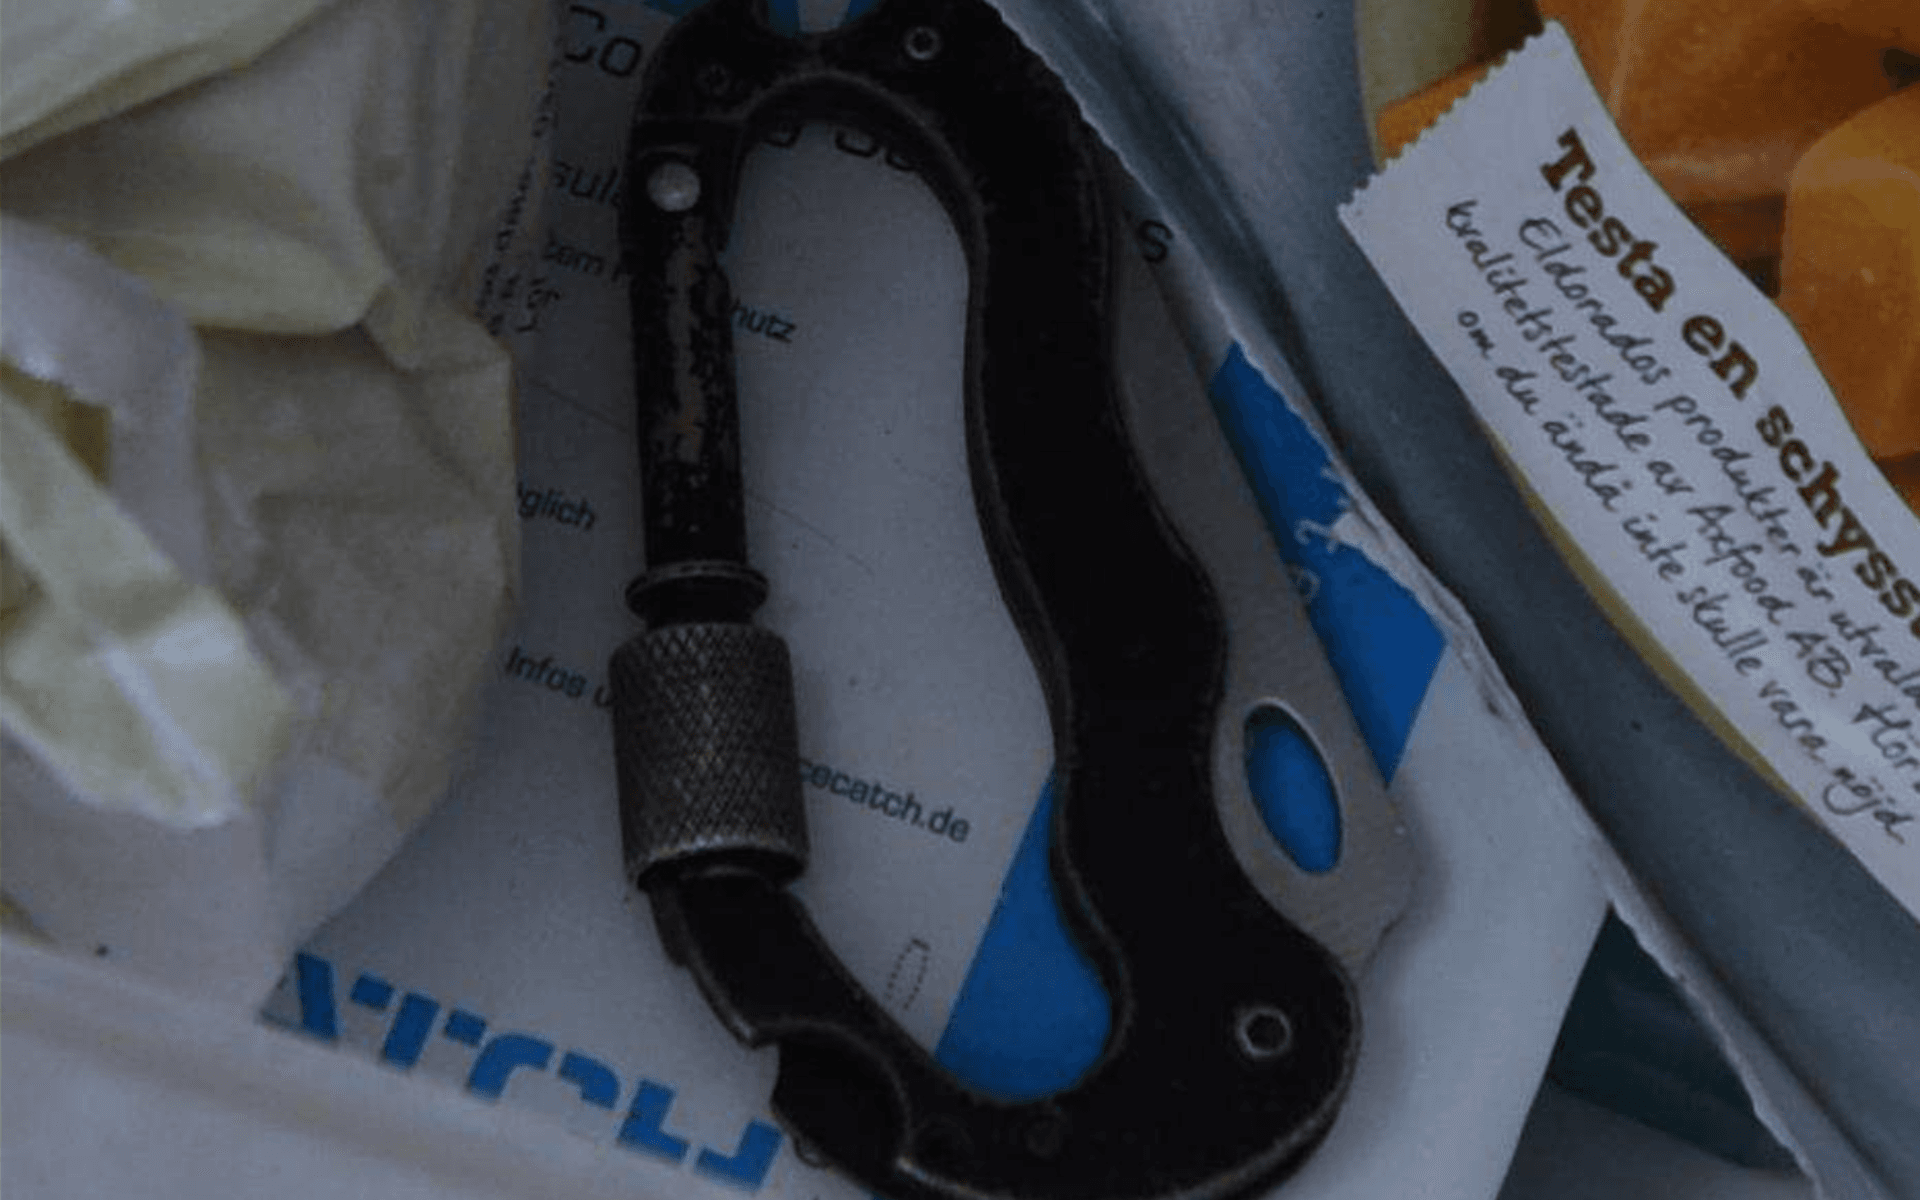 Kniven som 24-åringen använde hittades senare vid en husrannsakan i ett av frysfacken. Polisen kunde sedan bekräfta DNA-spår från både gärningsman och målsägande. 